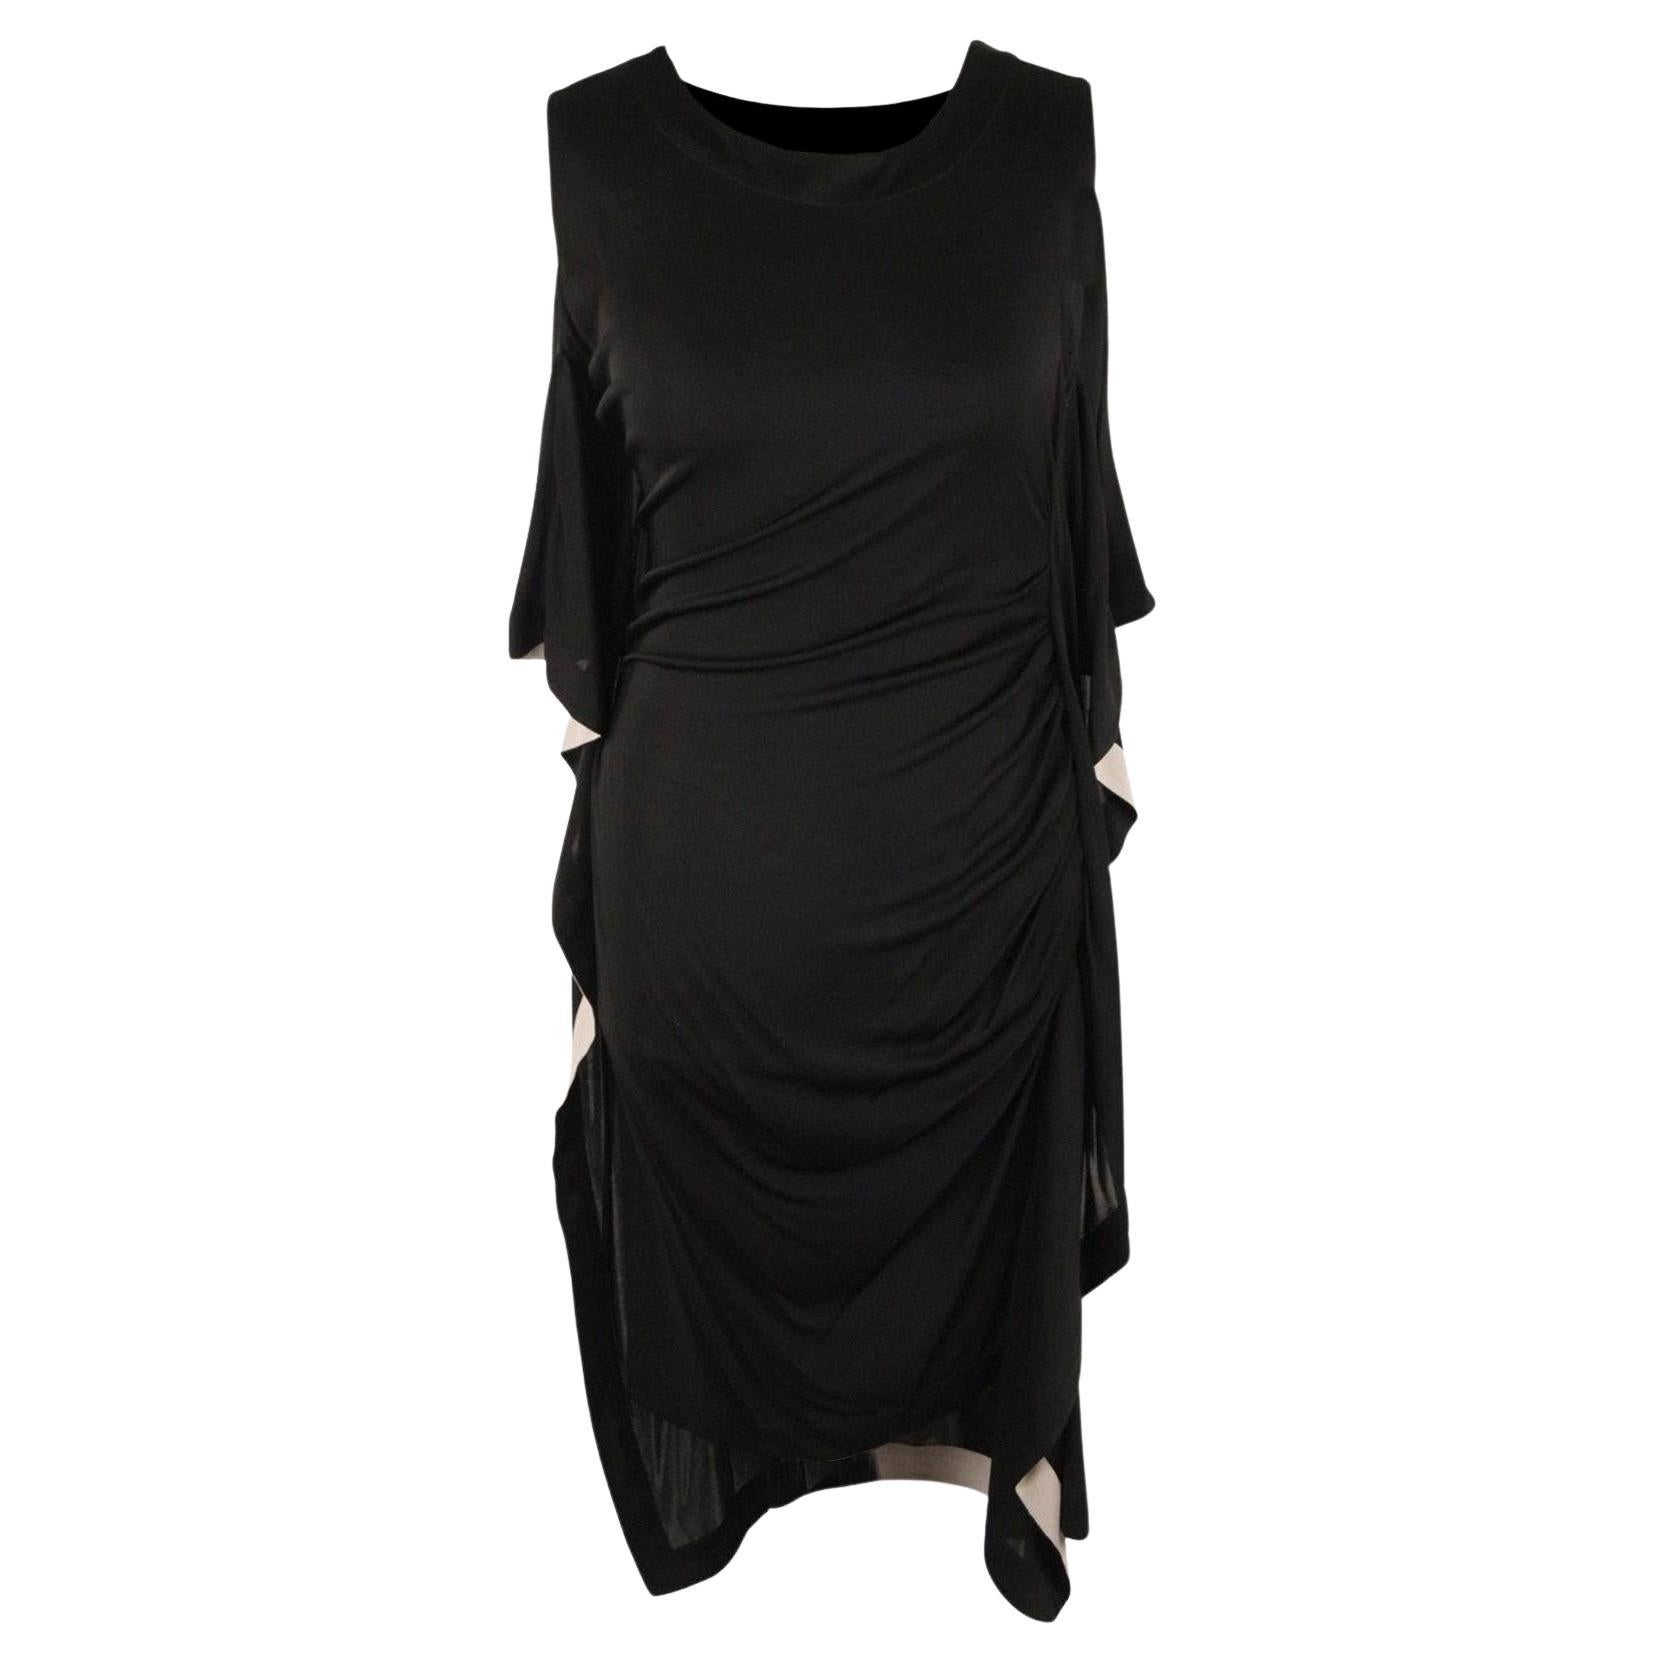 Vionnet Black Silky Sleeveless Dress Knee Lenght Size S